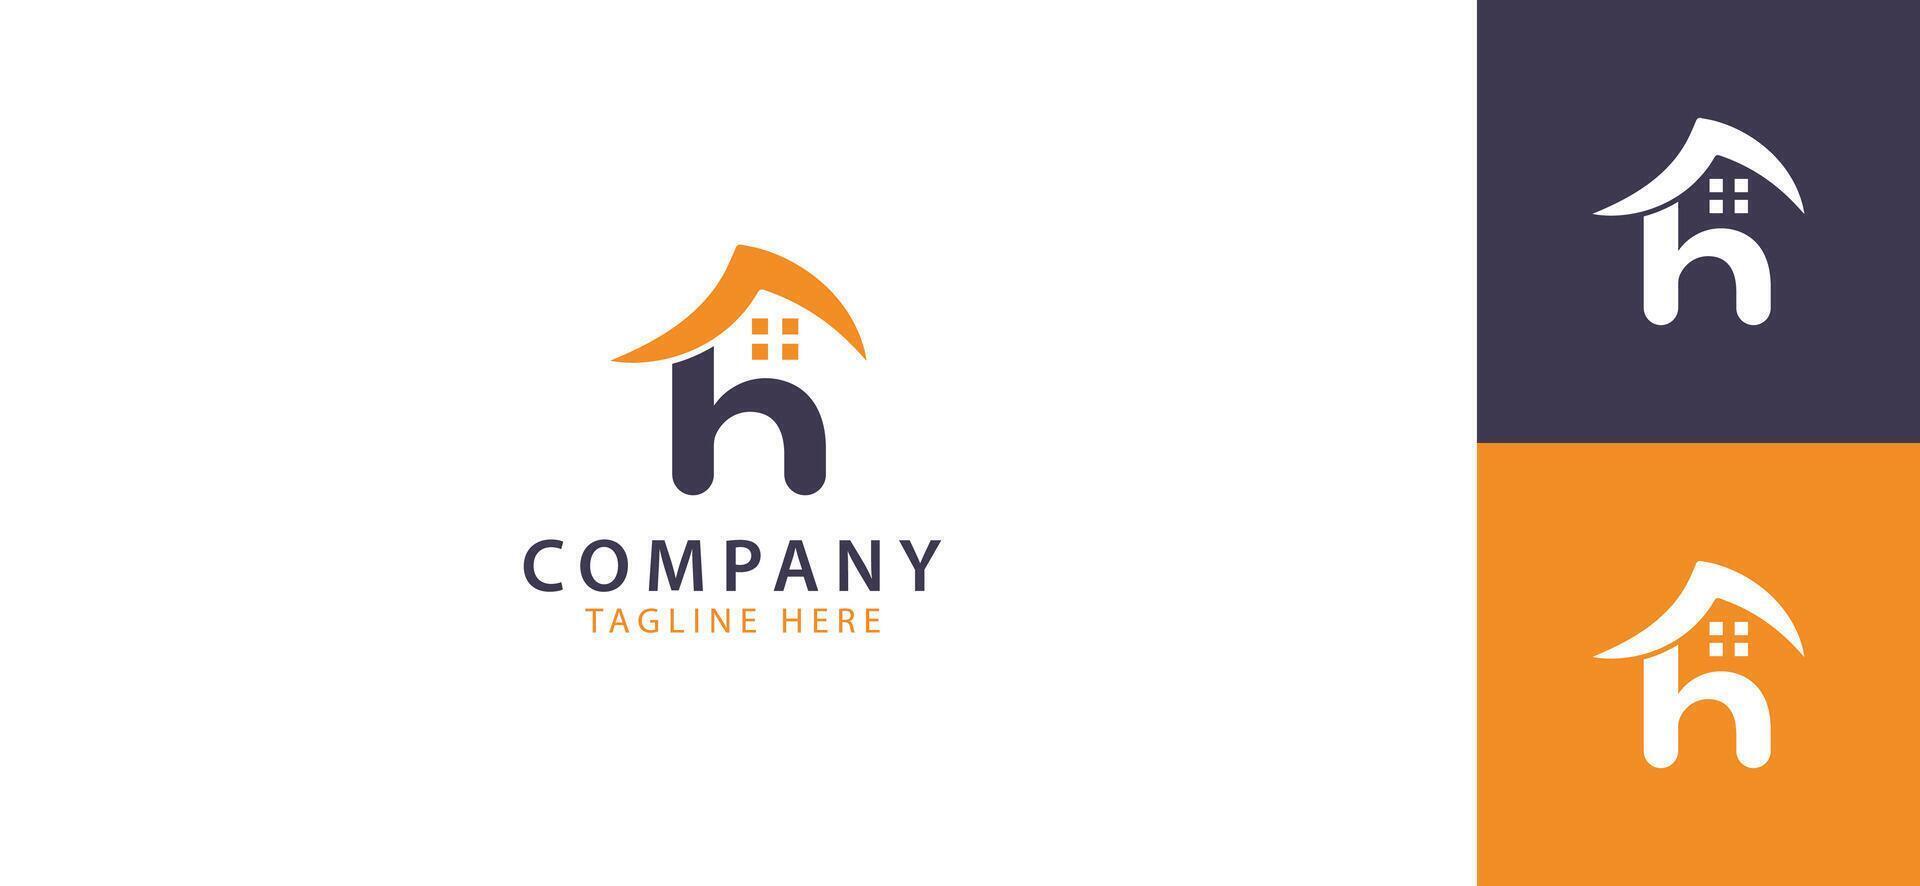 un pulcro y moderno letra h logo diseño hecho a mano específicamente para el real inmuebles industria, capturar el esencia de contemporáneo elegancia y prometedor sin límites oportunidades. vector